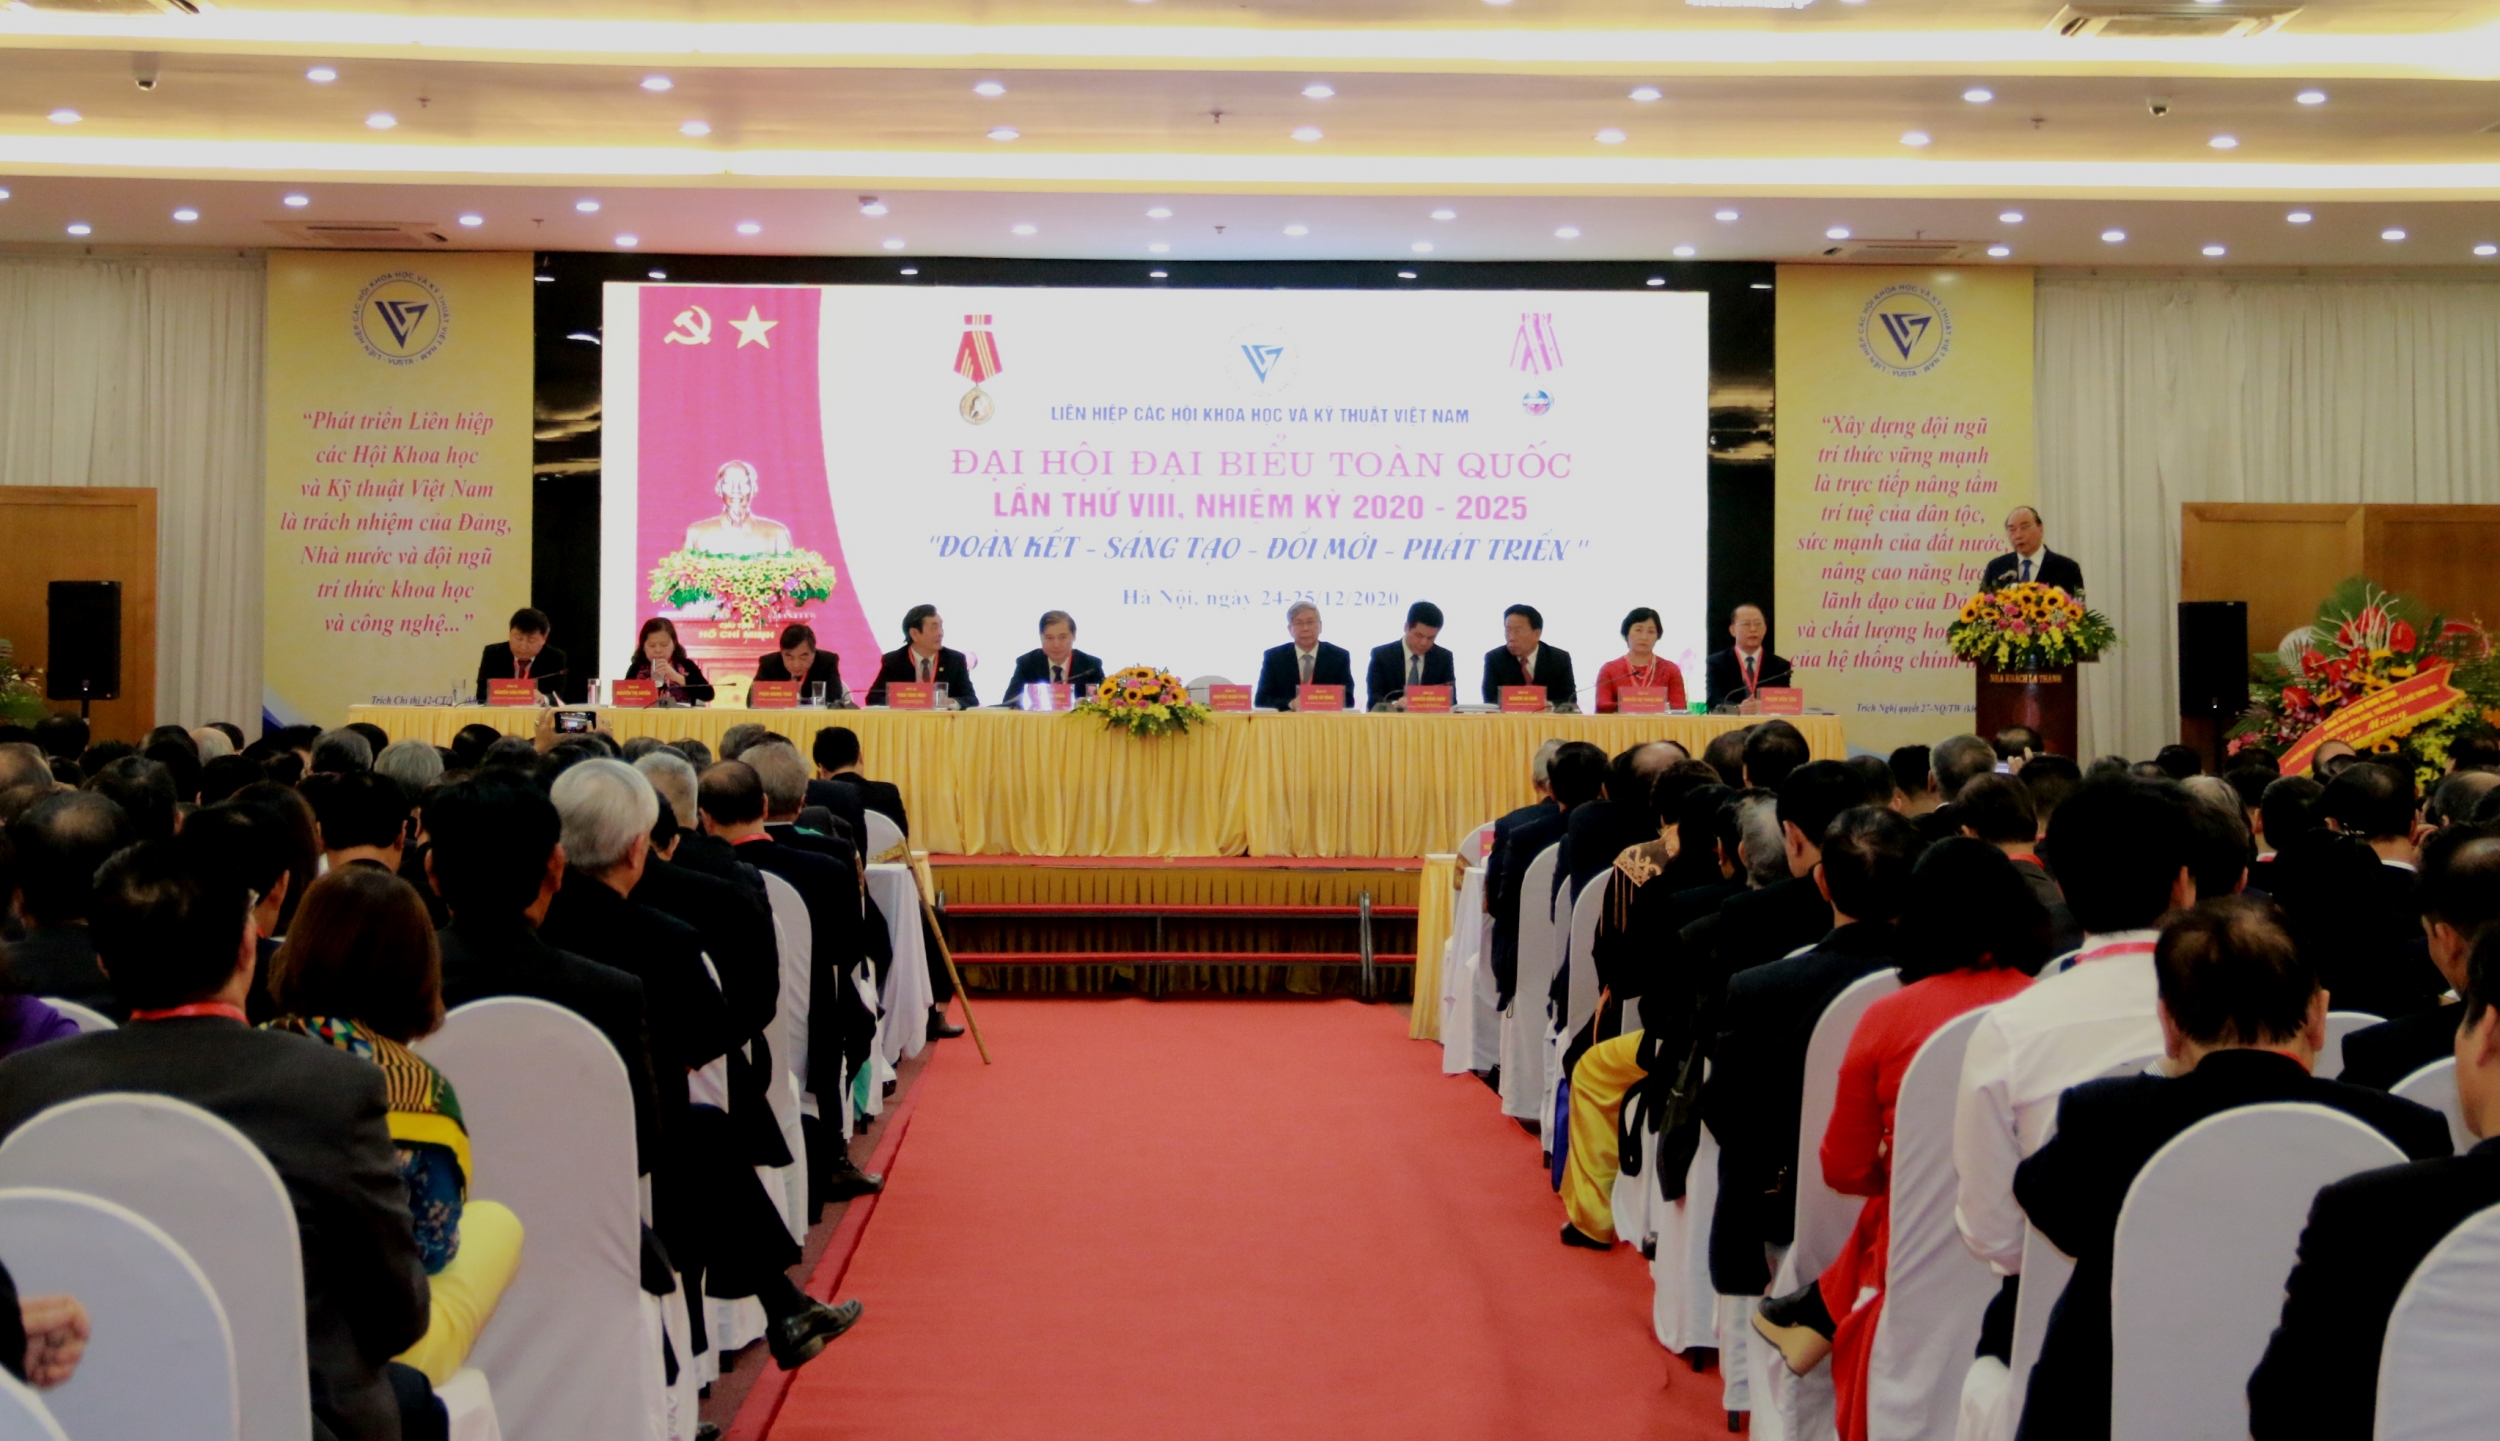 Đoàn đại biểu VPA tham dự Đại hội đại biểu toàn quốc Liên hiệp các Hội Khoa học Kỹ thuật Việt Nam lần thứ VIII, nhiệm kỳ 2020-2025